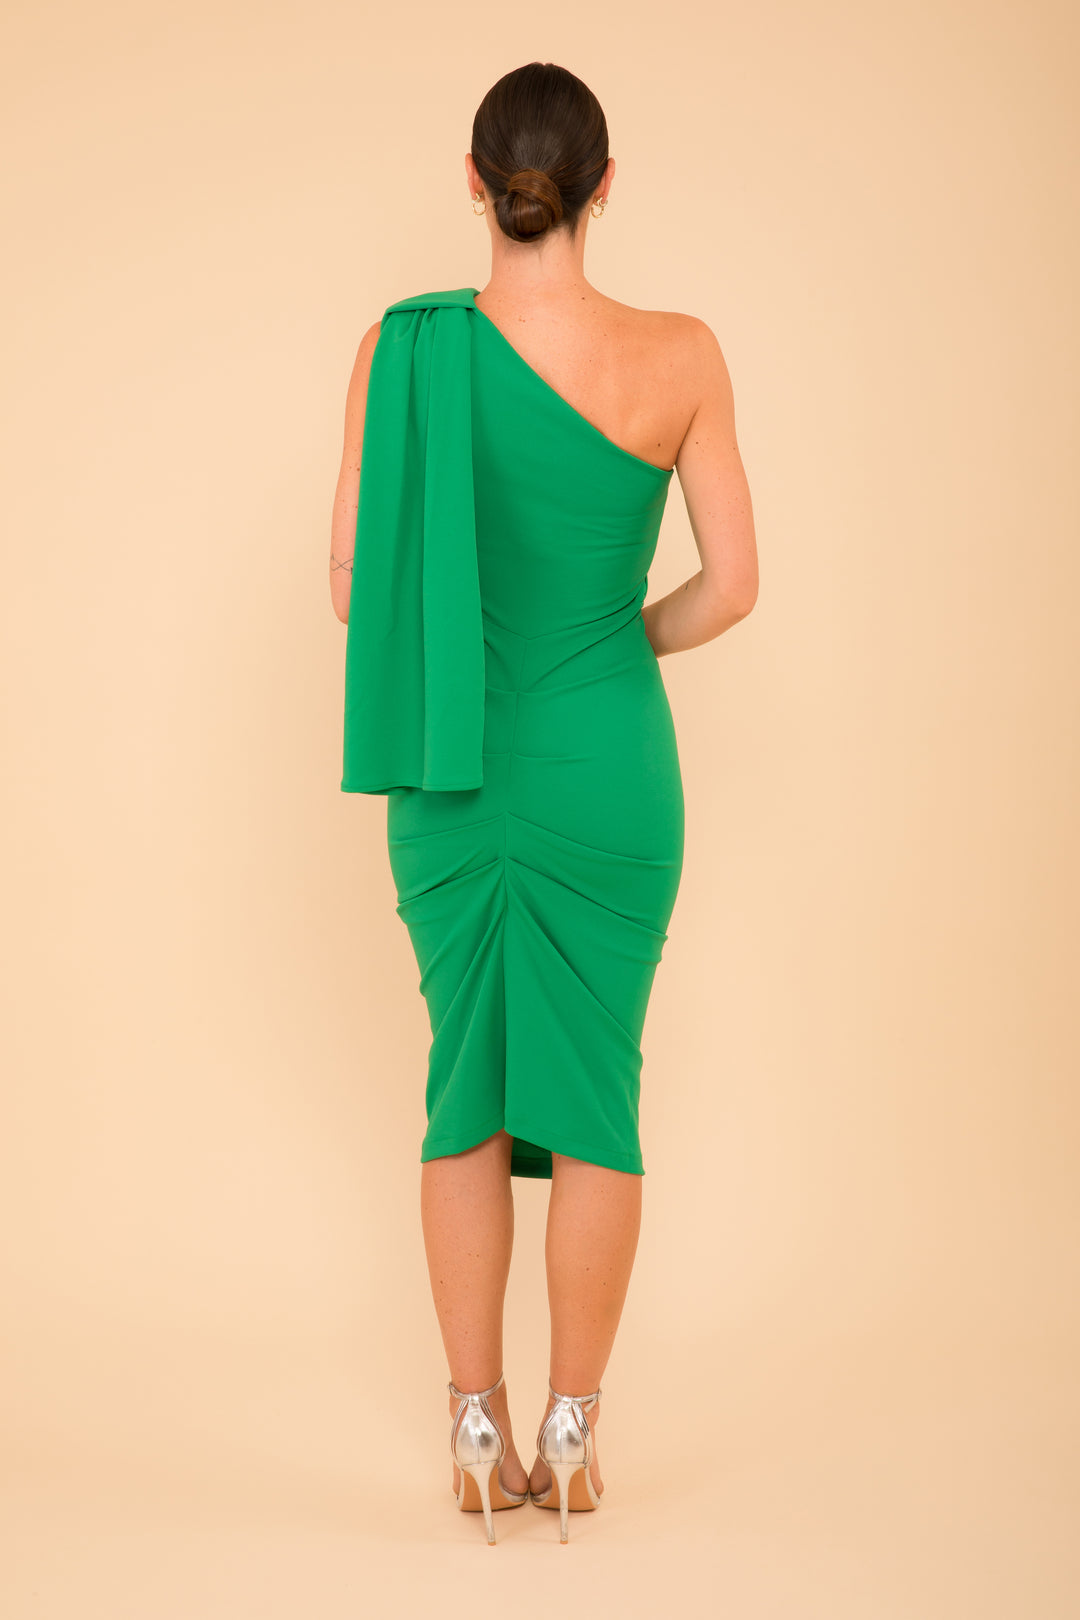 ATOM LABEL zirconium dress in emerald green